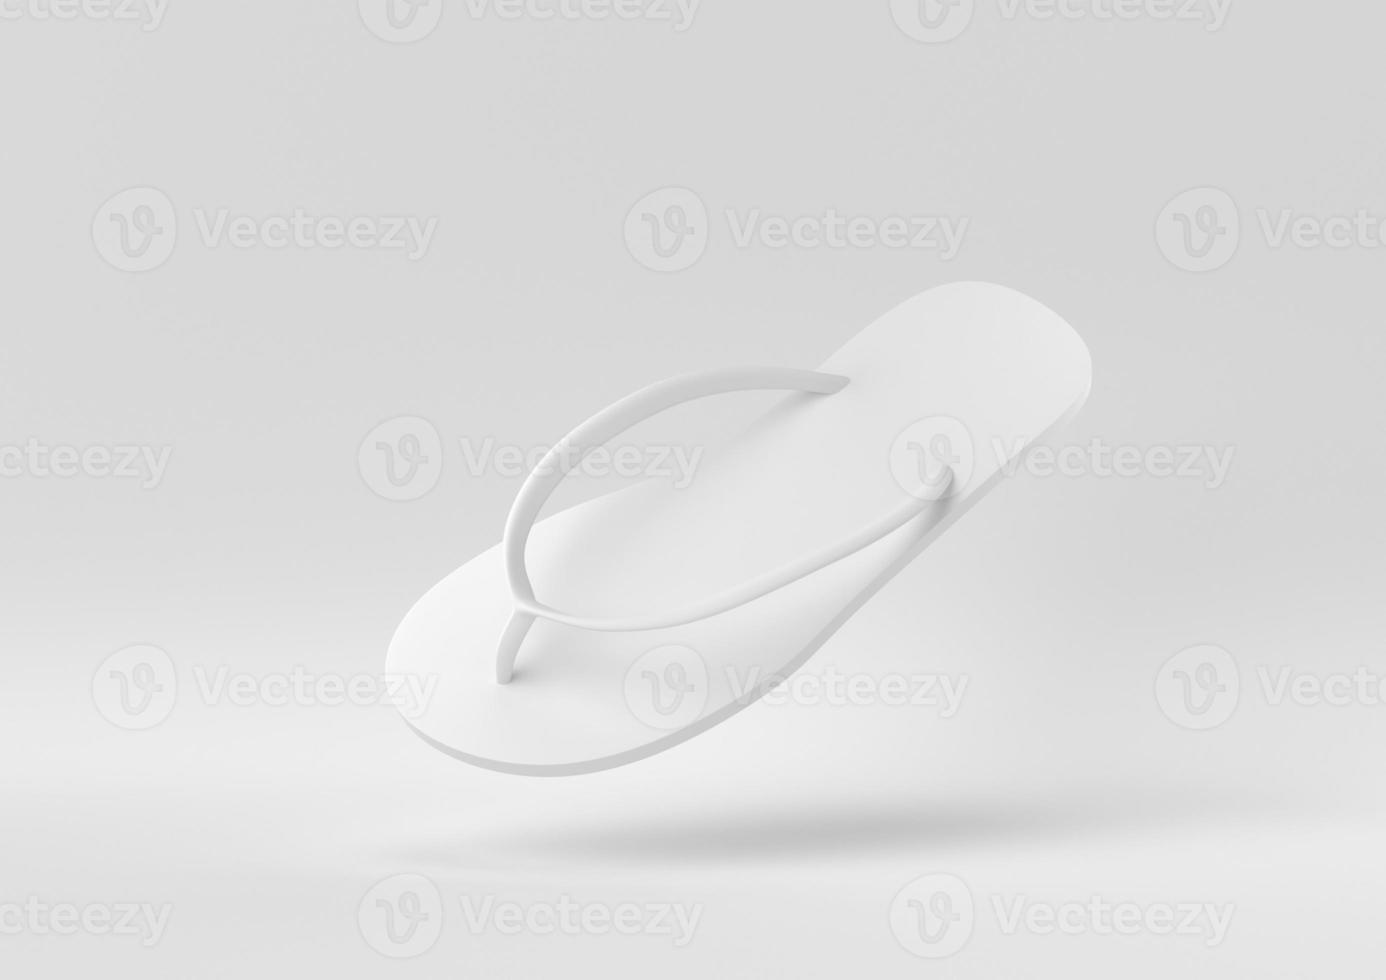 chanclas blancas flotando en fondo blanco. idea de concepto mínimo creativo. procesamiento 3d foto